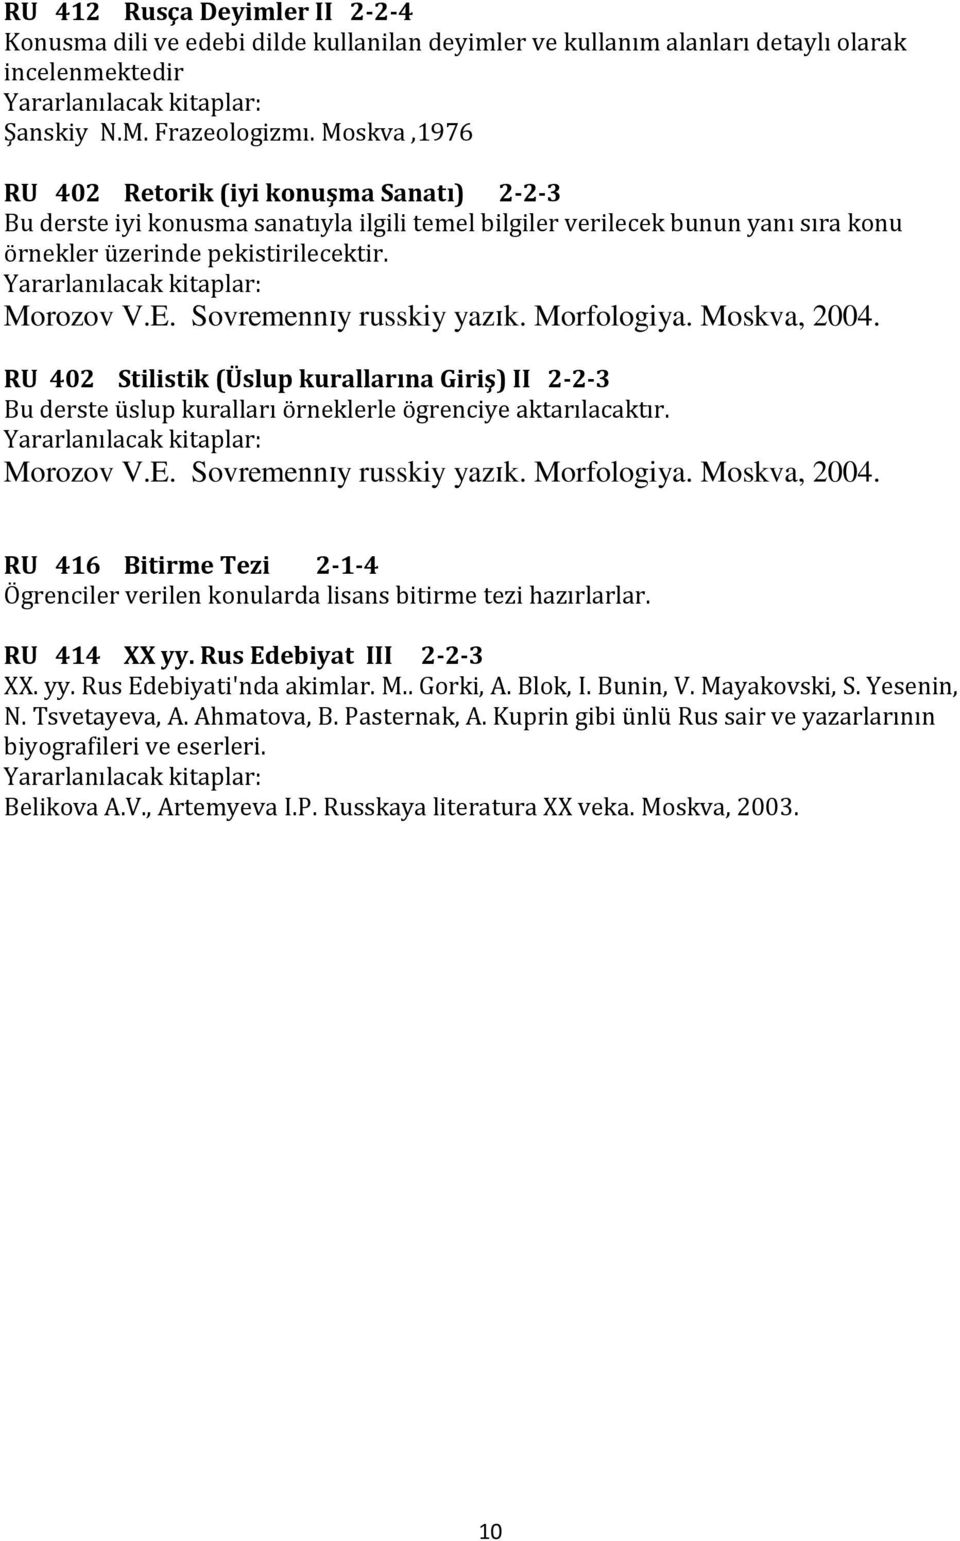 Sovremennɪy russkiy yazɪk. Morfologiya. Moskva, 2004. RU 402 Stilistik (Üslup kurallarına Giriş) II 2-2-3 Bu derste üslup kuralları örneklerle ögrenciye aktarılacaktır. Morozov V.E.